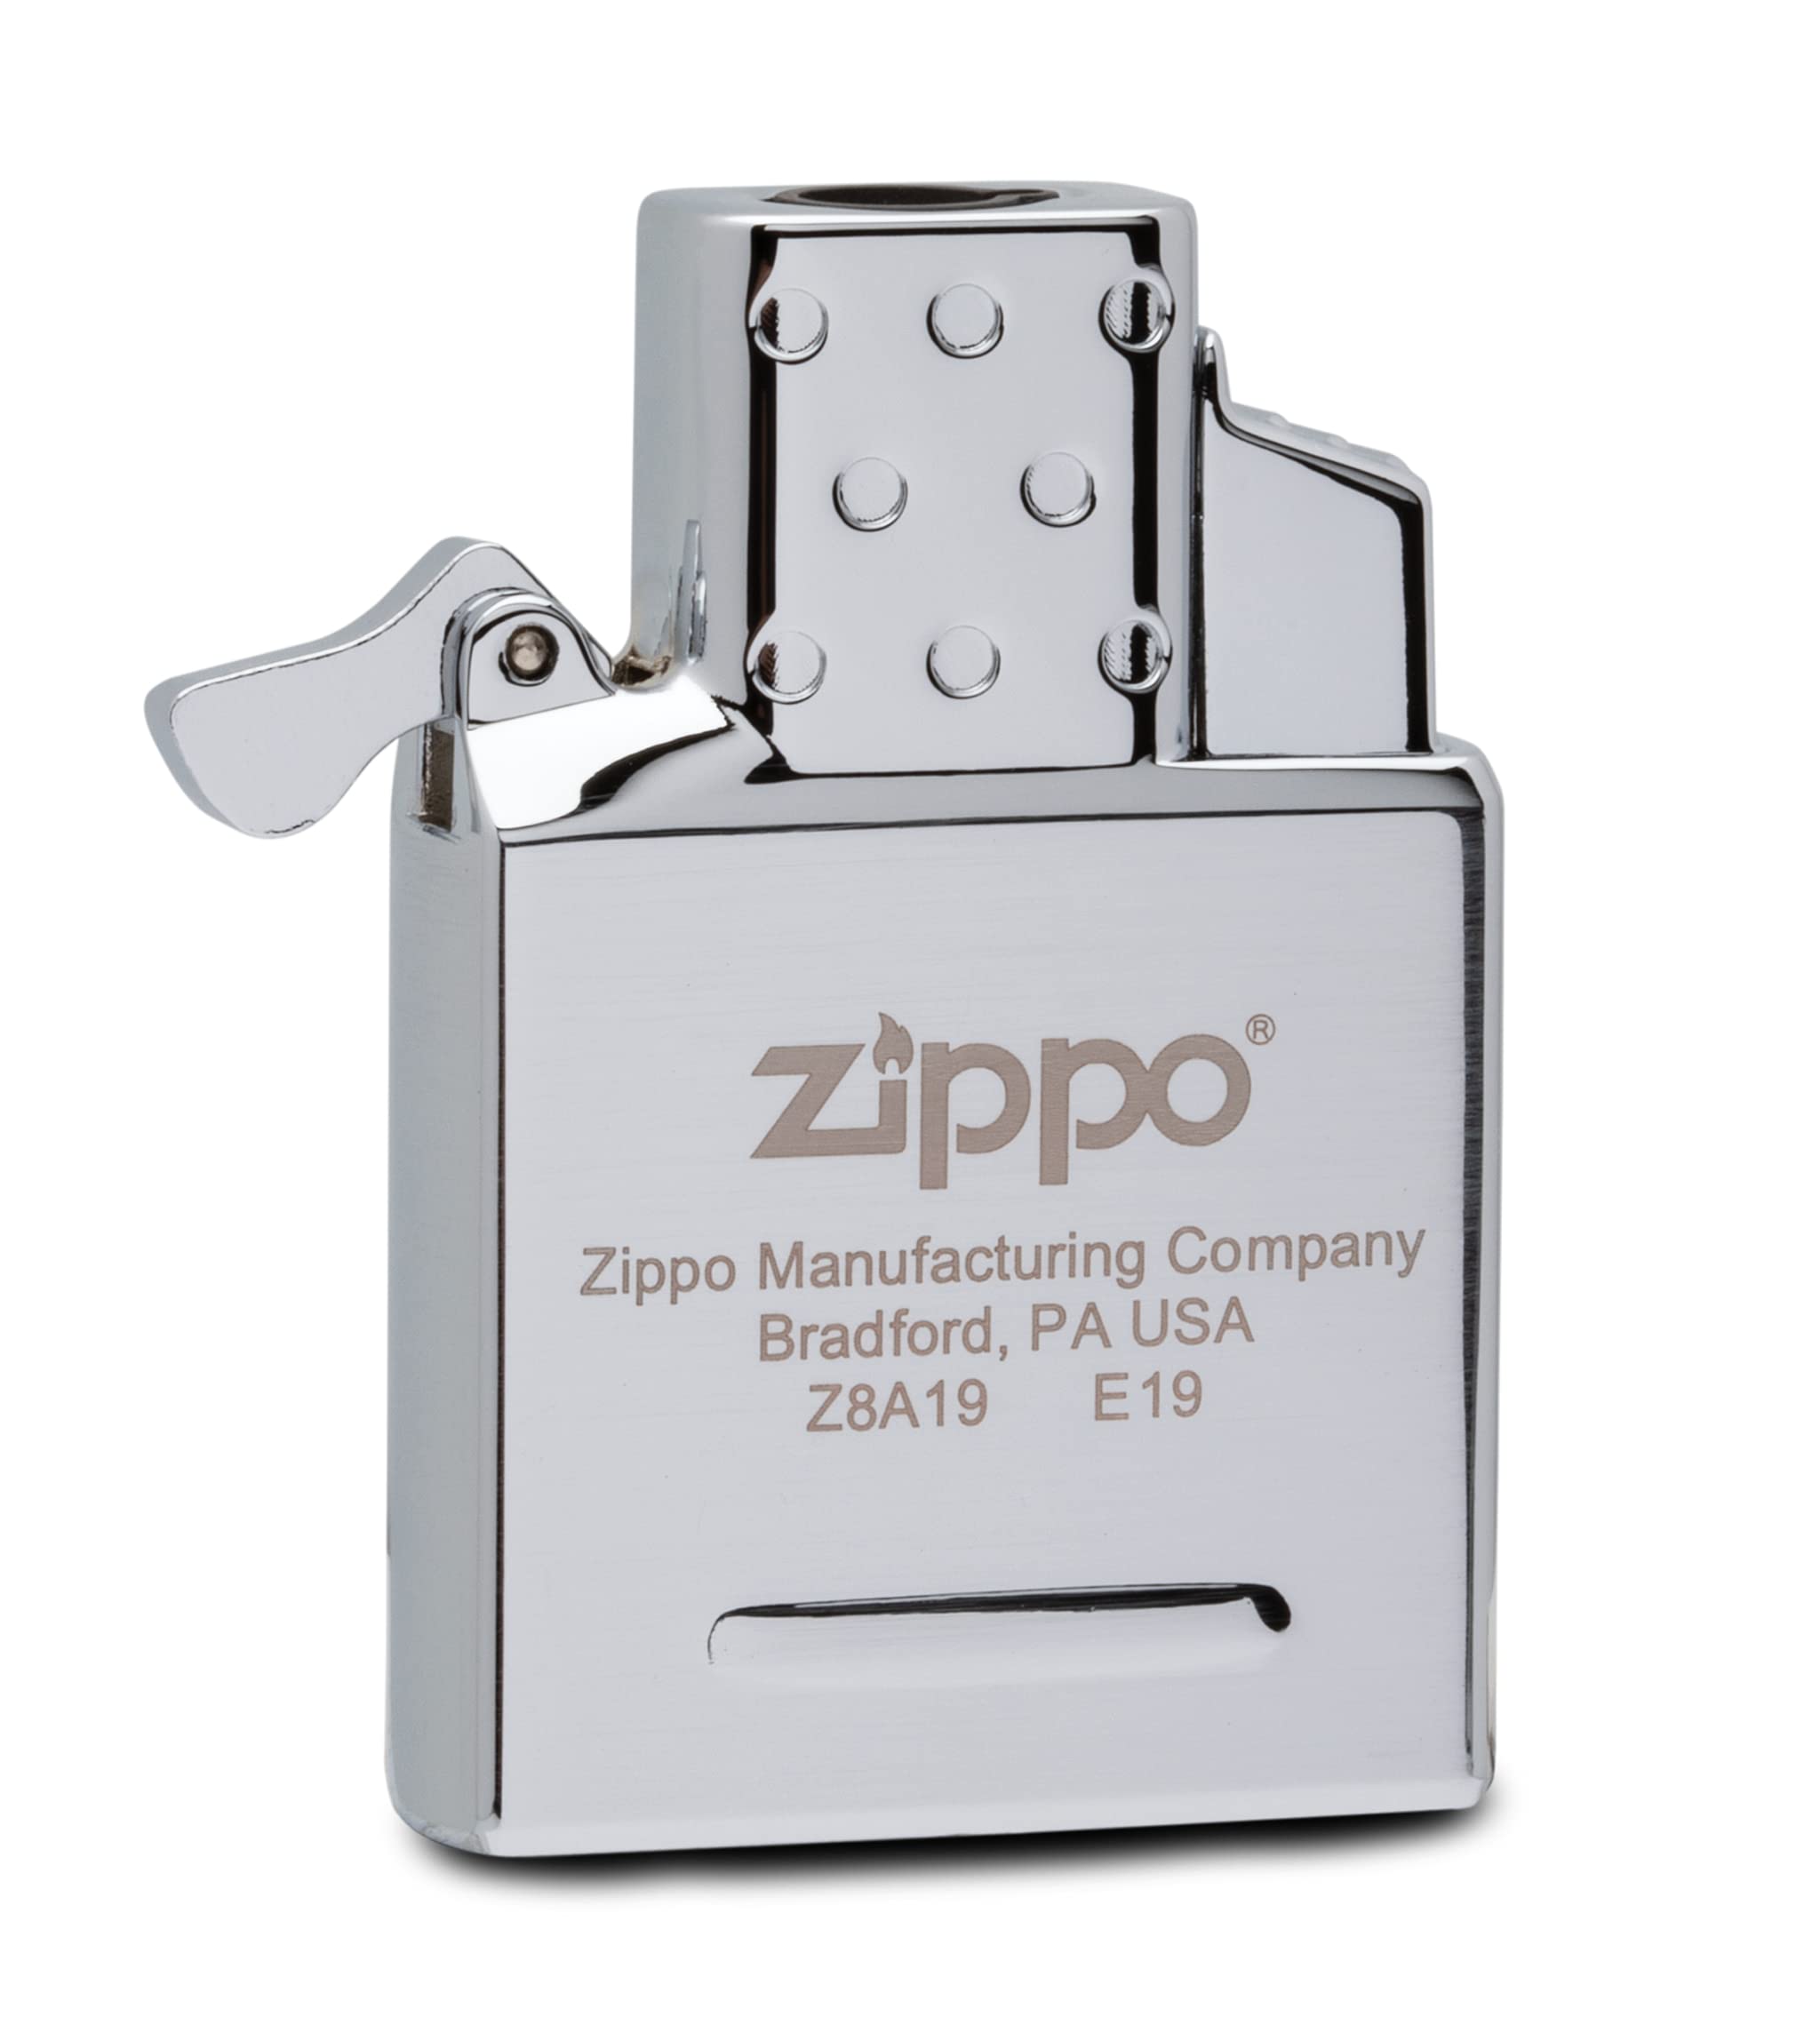 Zippo 65826 Butane Lighter Insert - Single Torch, Chrome